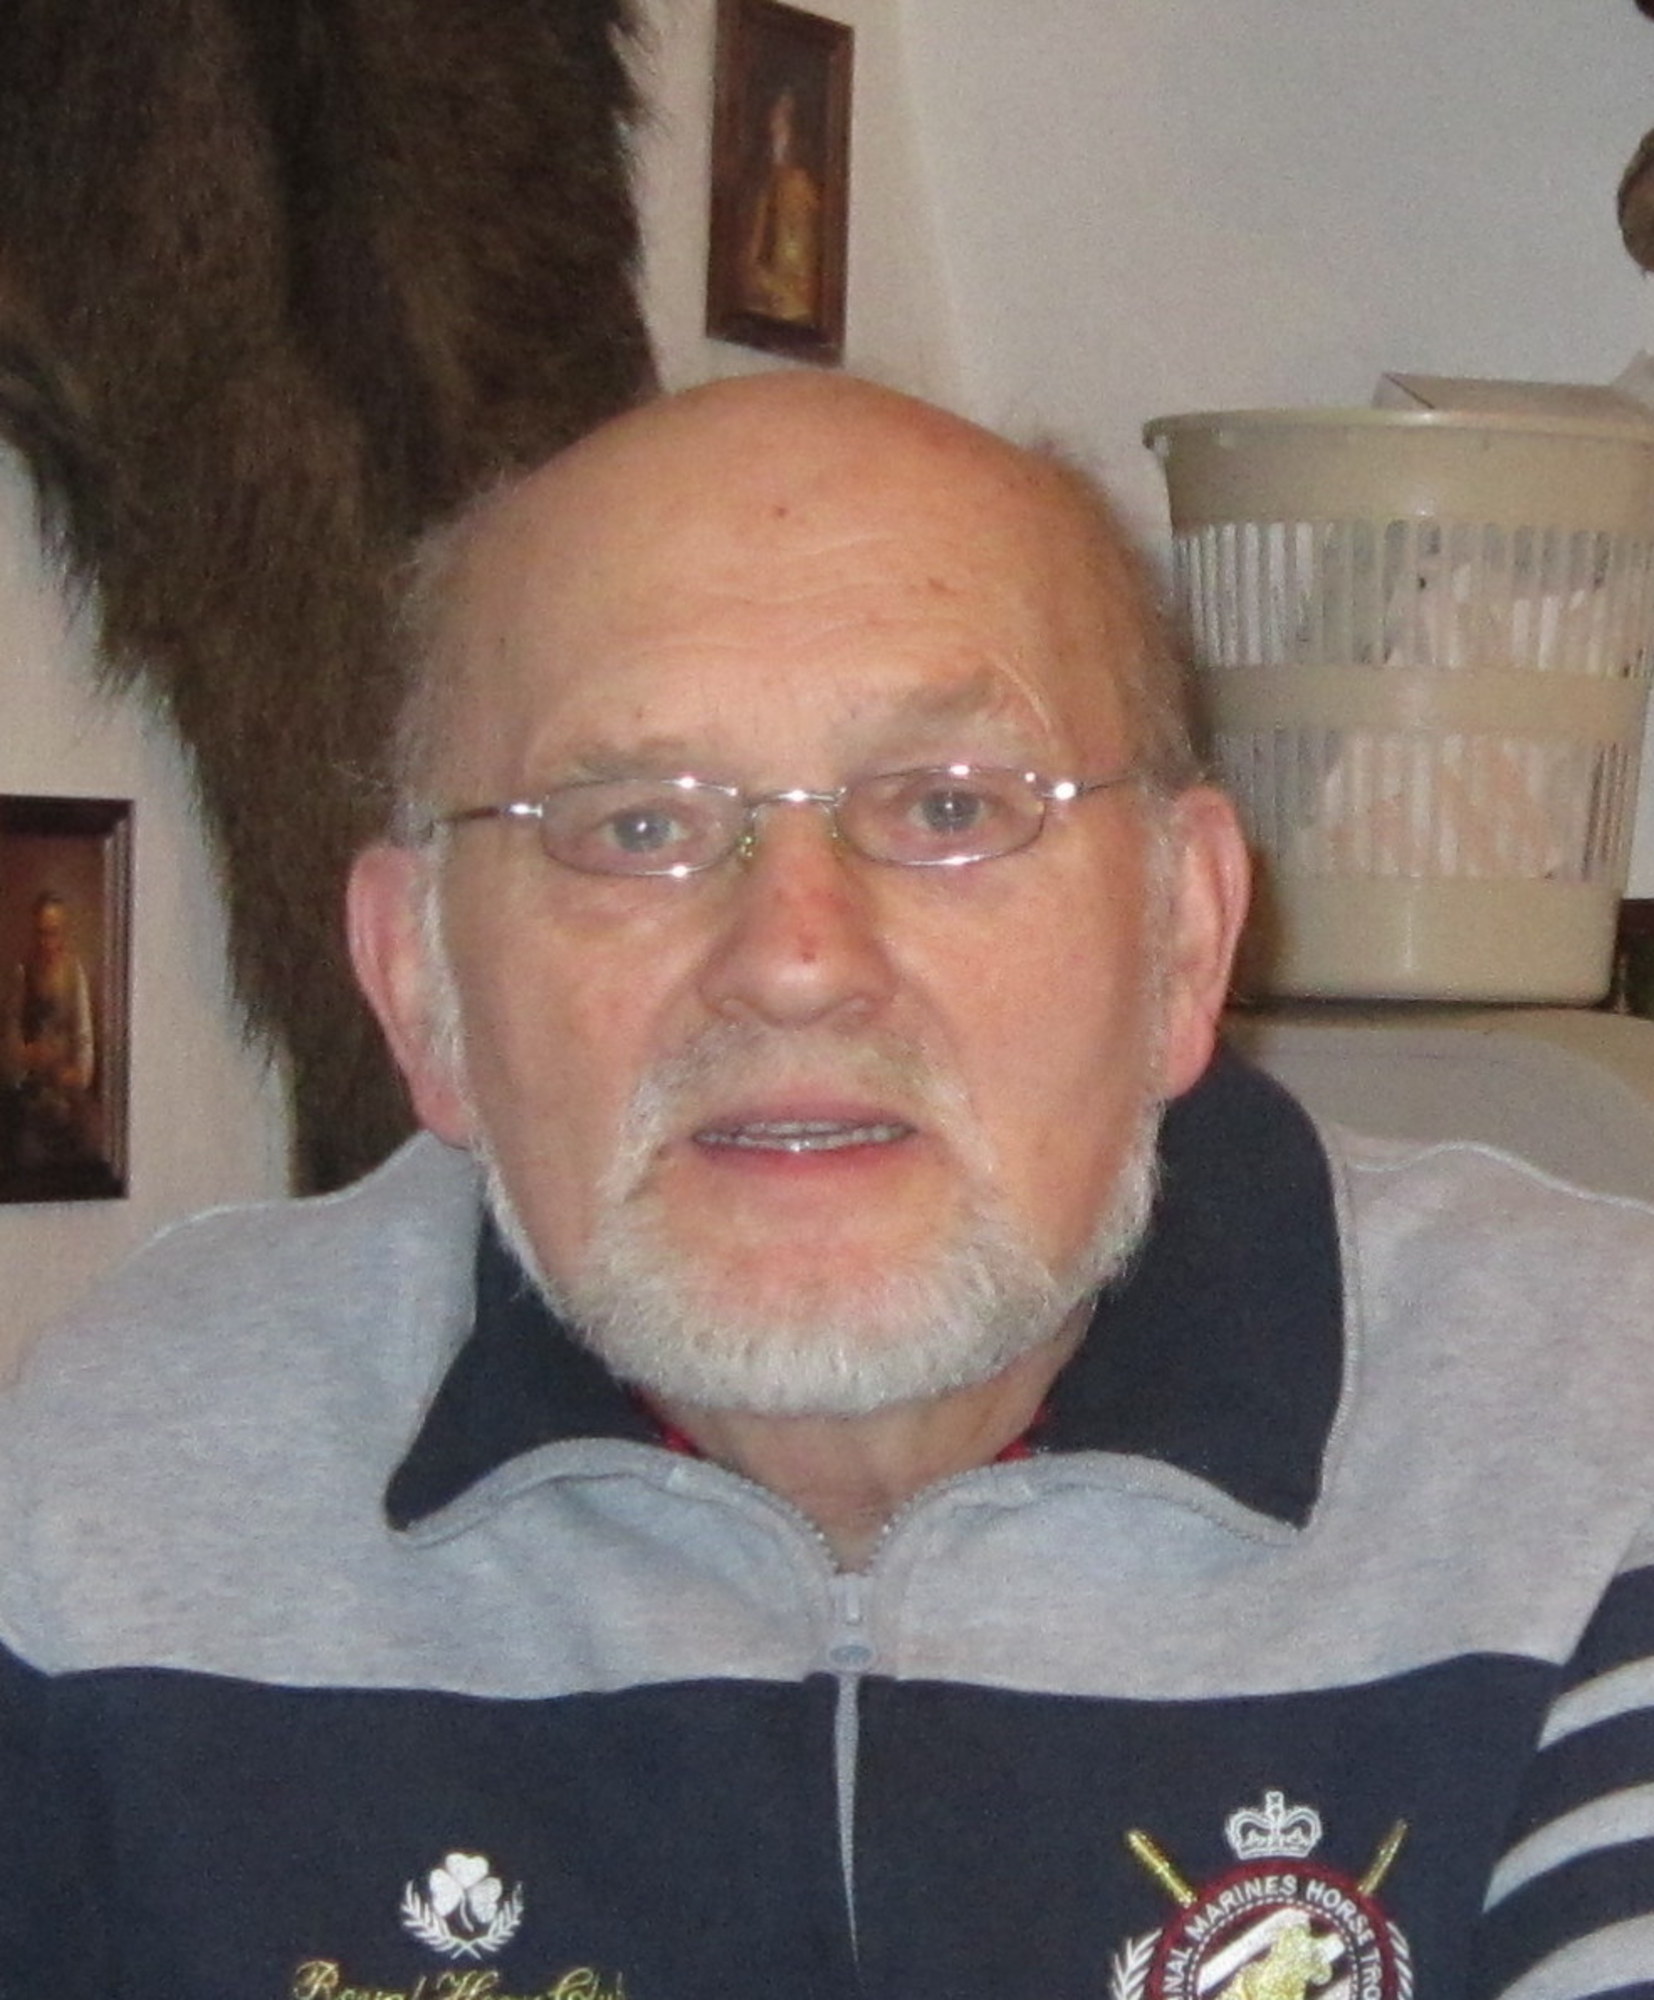 Karel Mornstein Zierotin in 2013